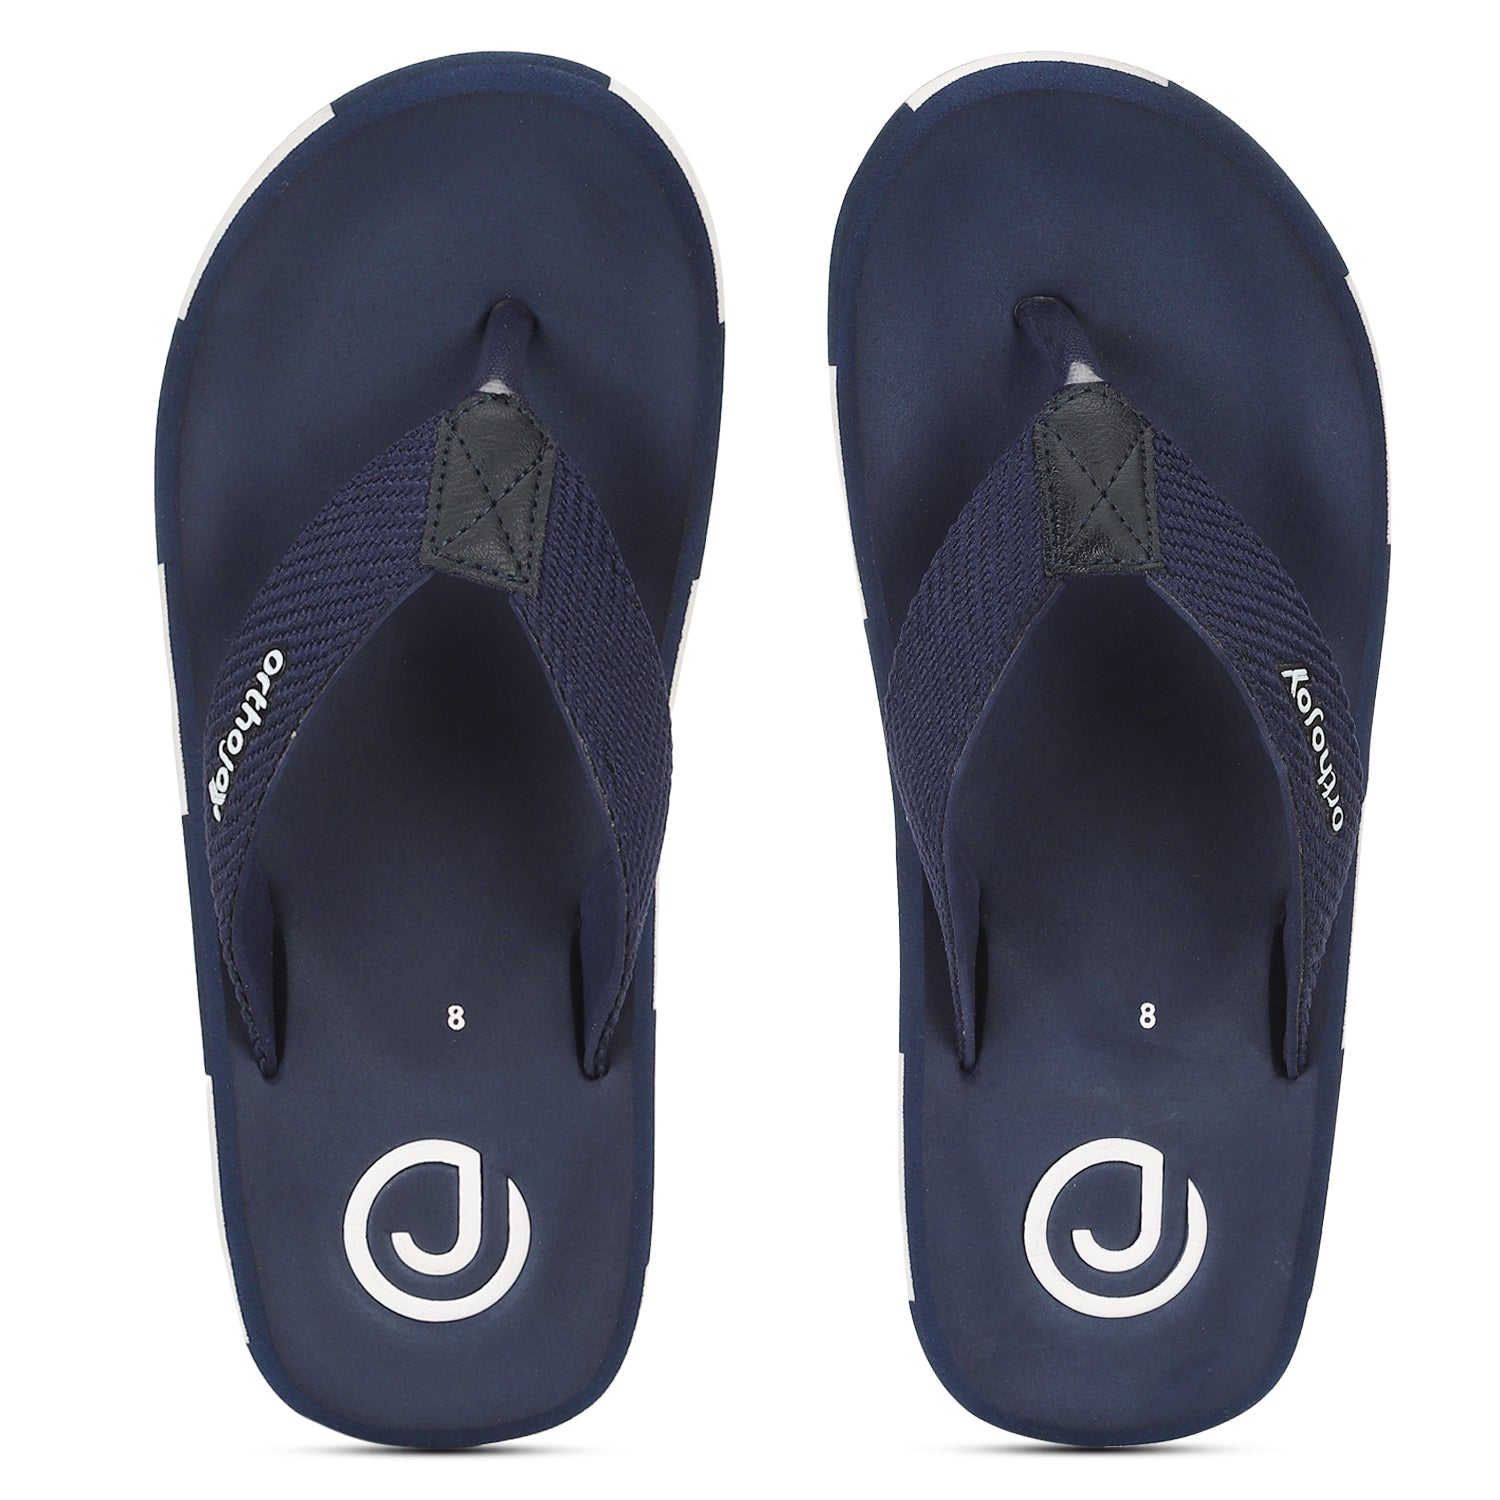 Ortho Slippers for men/Regular wear slipper